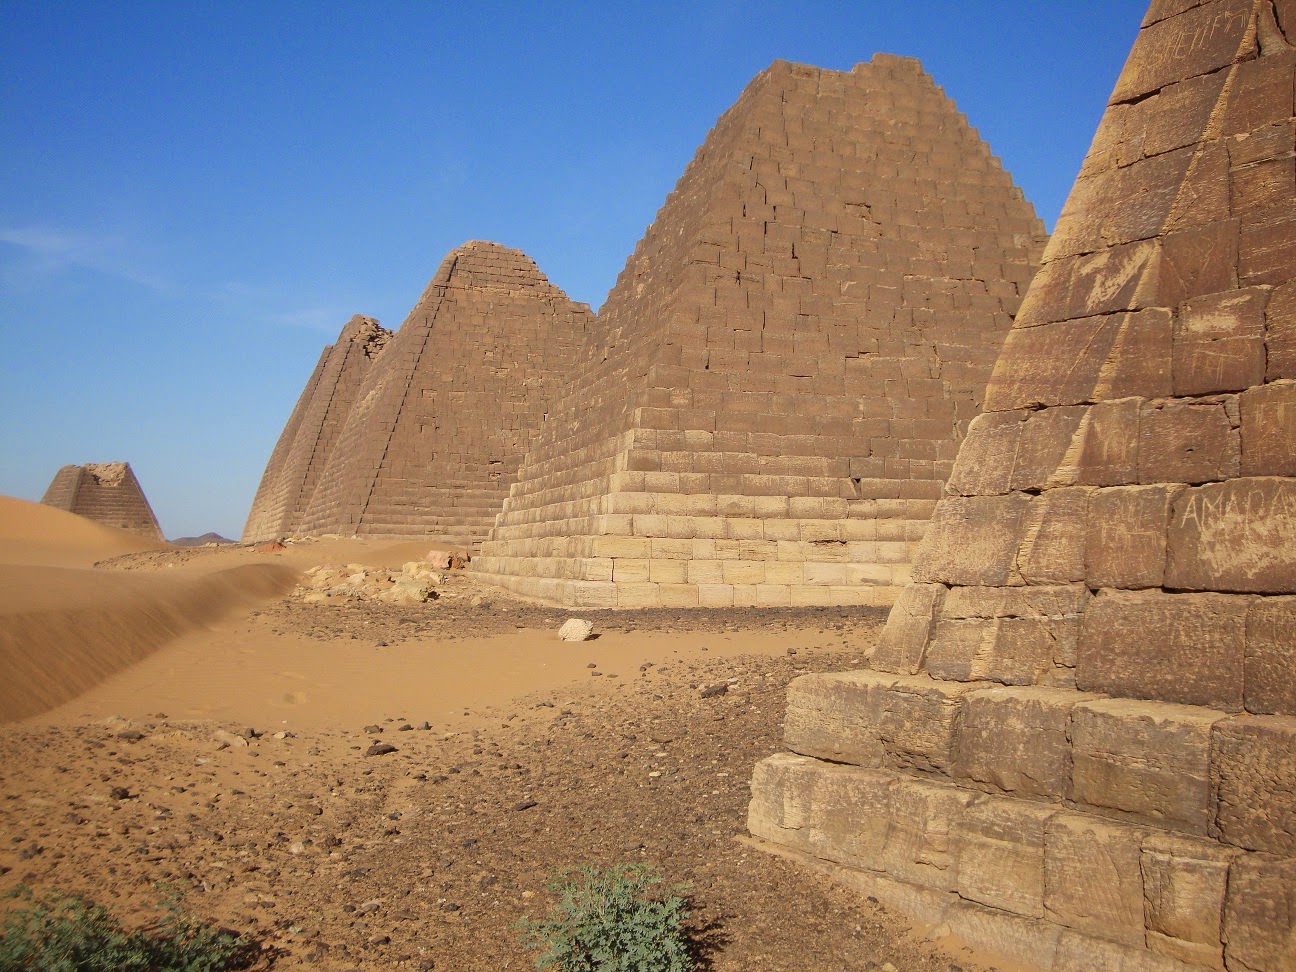 Характер взаимоотношений с природой цивилизации мероэ. Пирамиды Нубии в Египте. Пирамиды Мероэ Судан. Нубийские пирамиды Мероэ. Нубийские пирамиды в Судане.